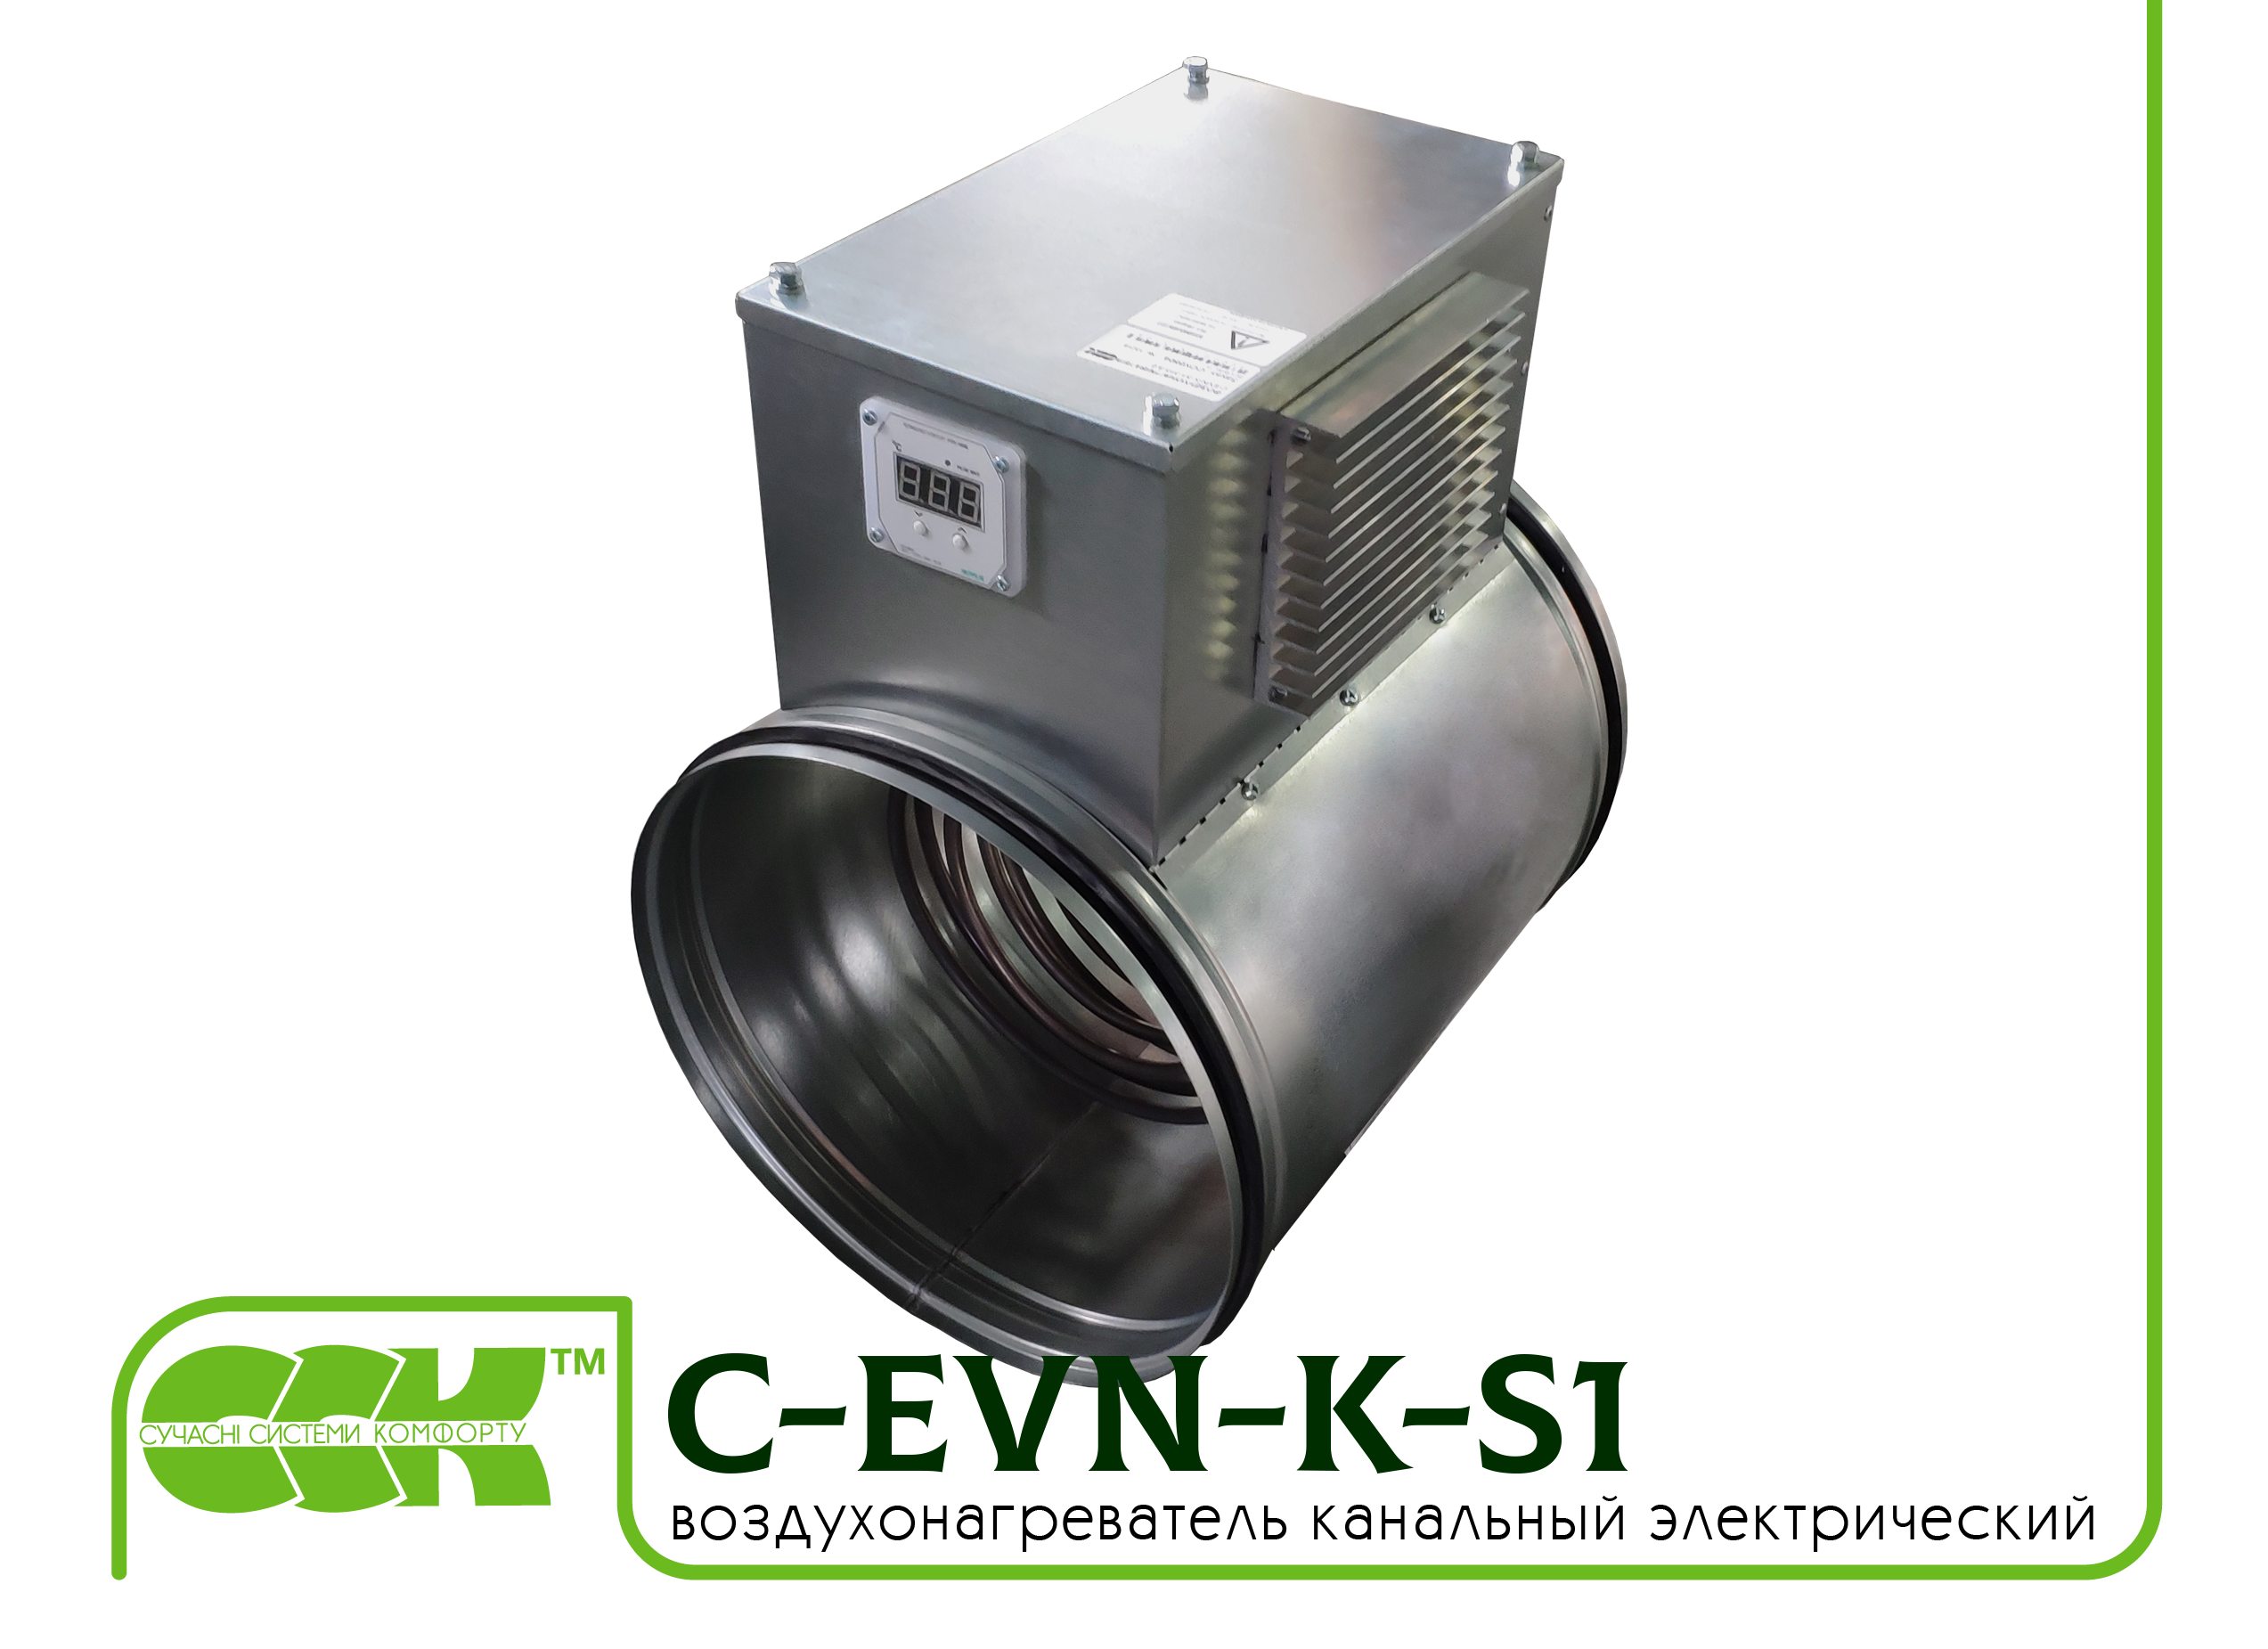 Воздухонагреватель канальный электрический для круглых каналов C-EVN-K-S1-160-1,5